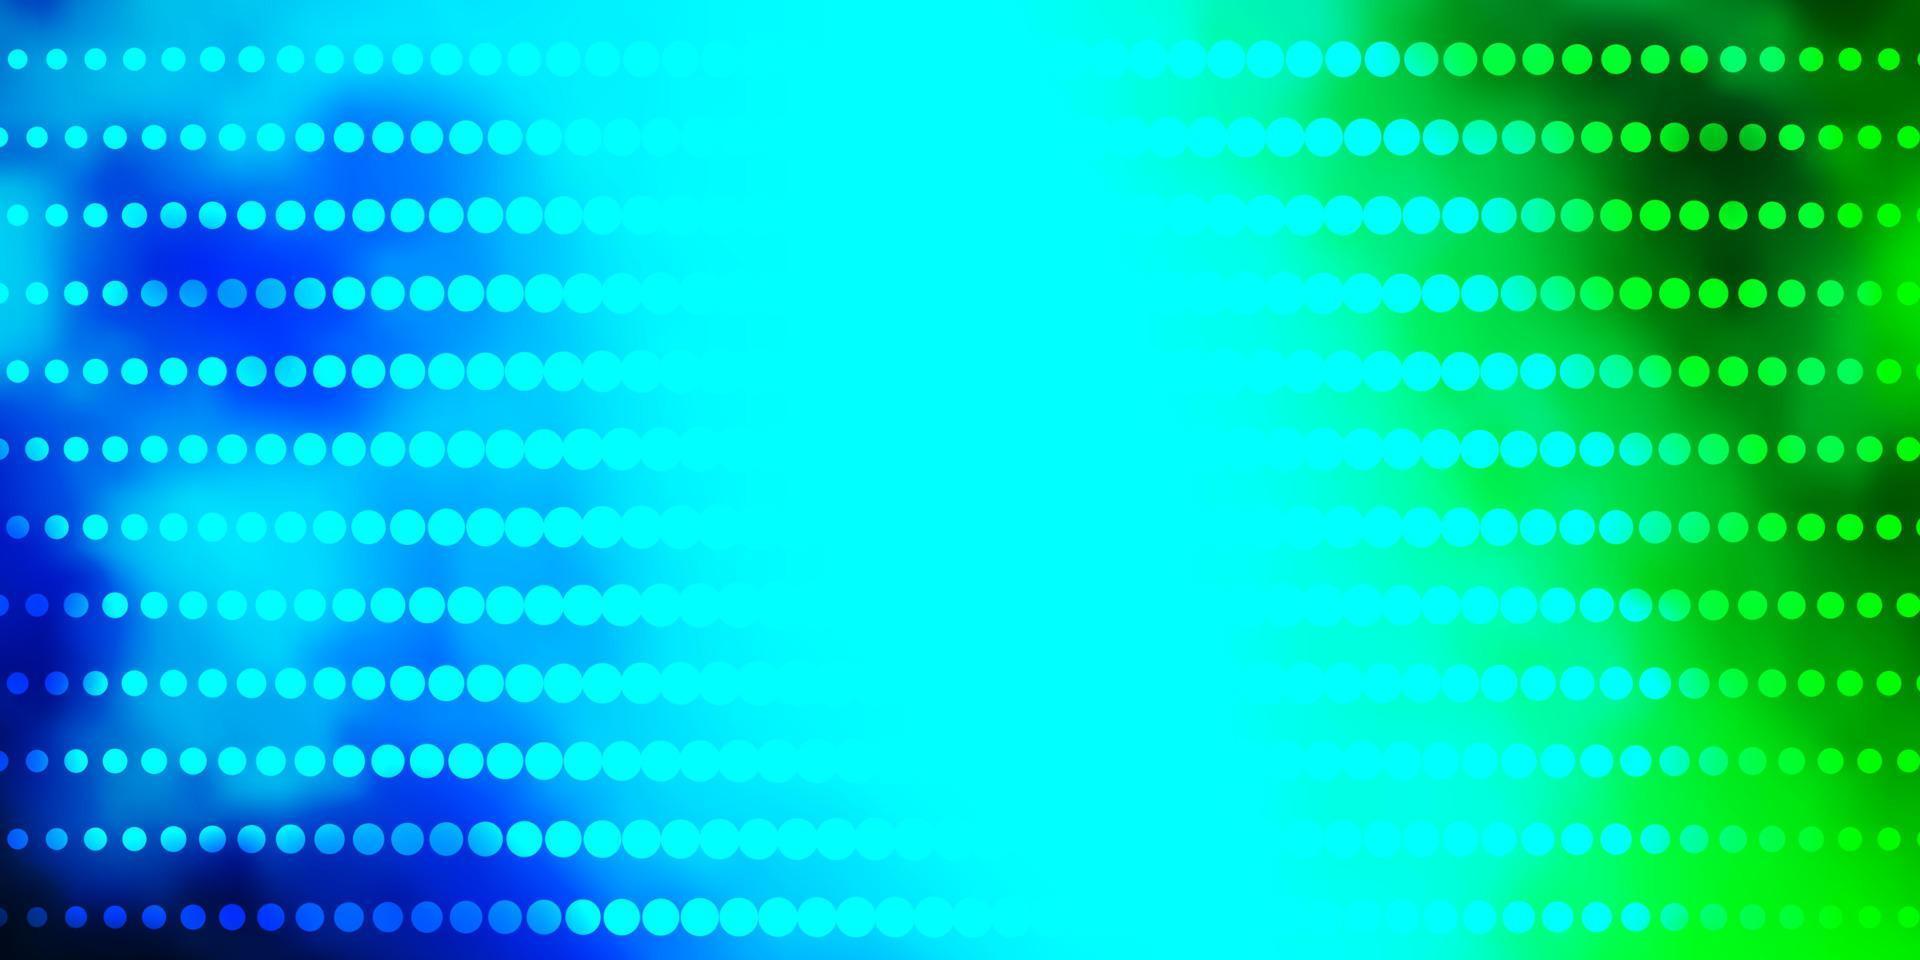 padrão de vetor azul, verde claro com círculos.